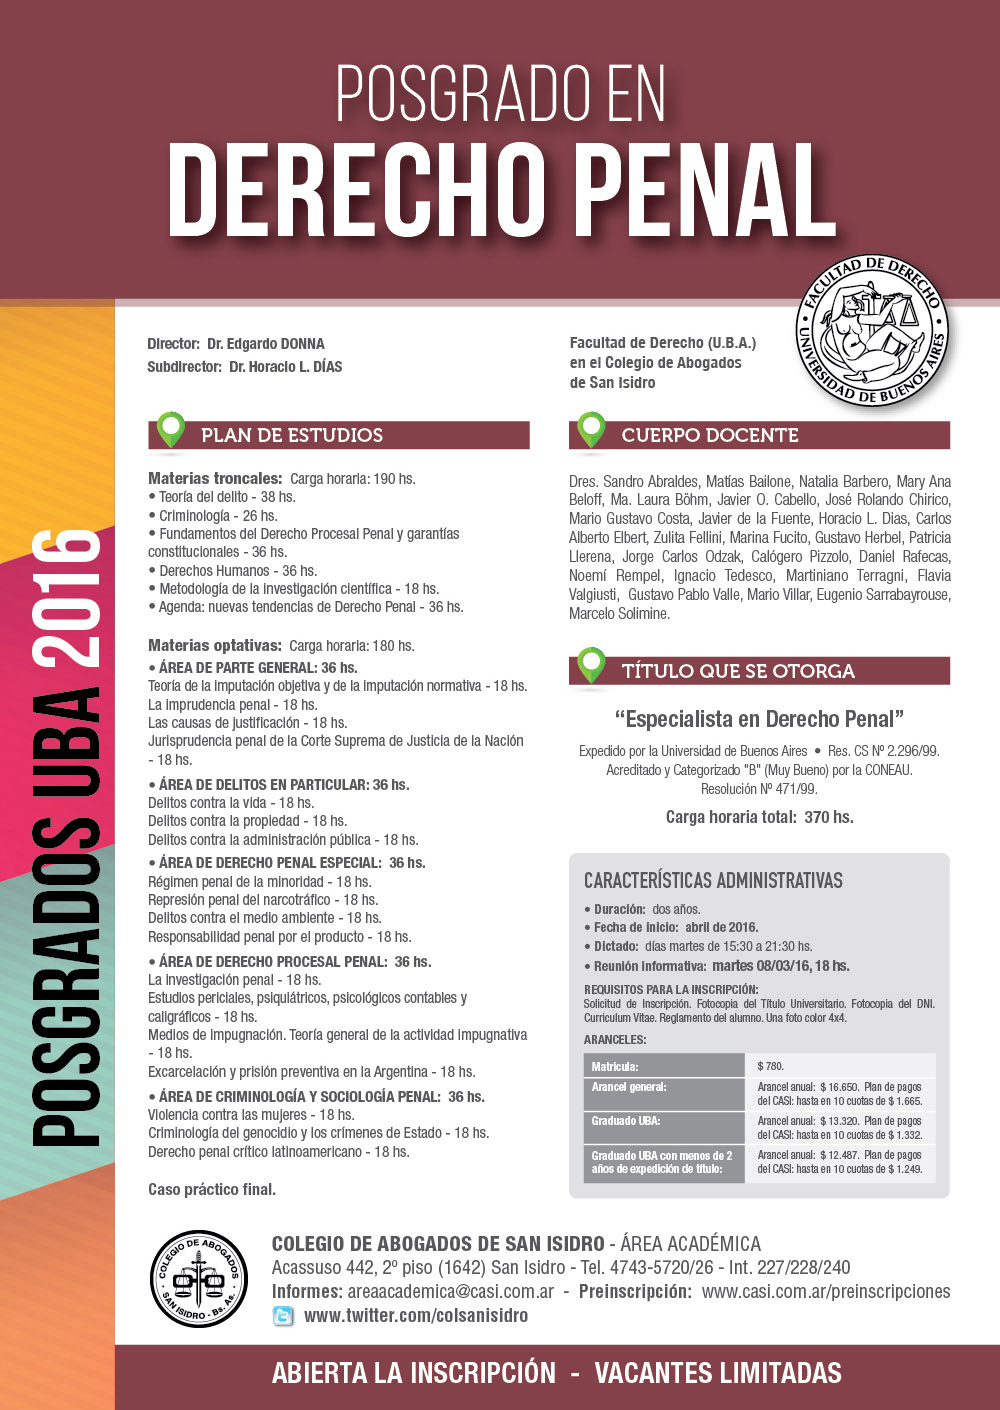 Derecho Penal. Carrera de especialización | Colegio de Abogados de San  Isidro (CASI)